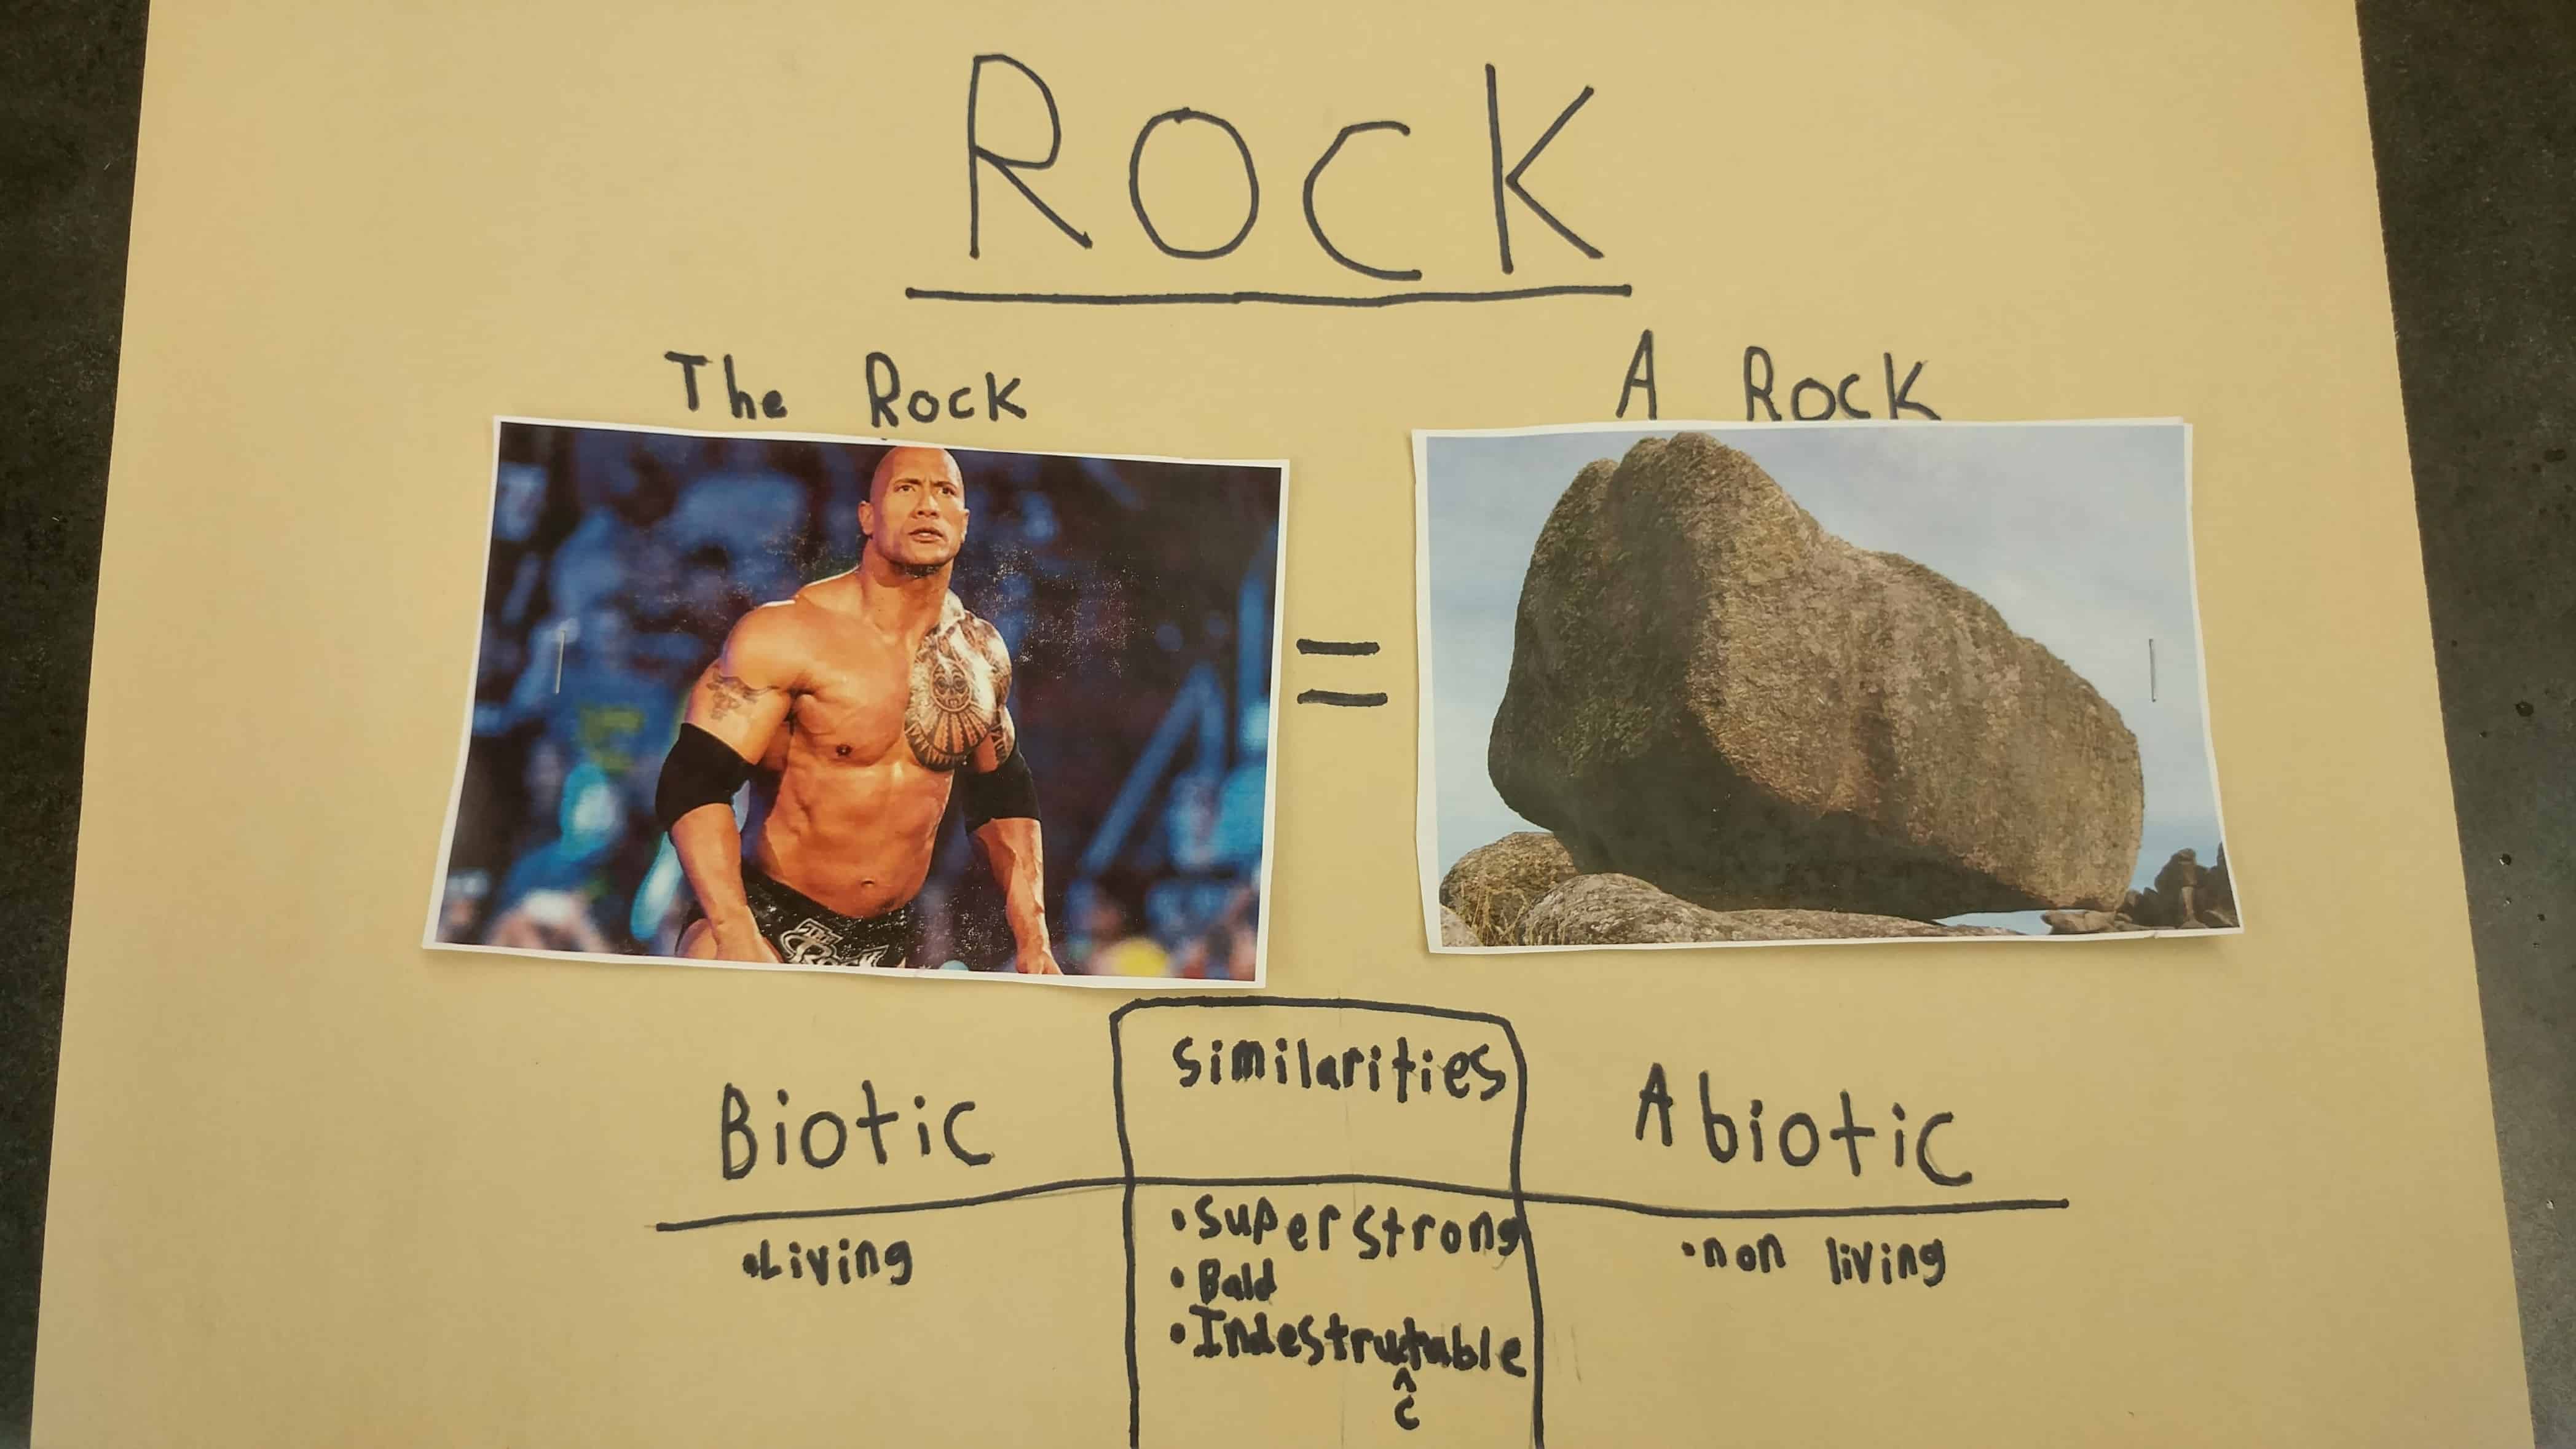 dwayne the rock johnson